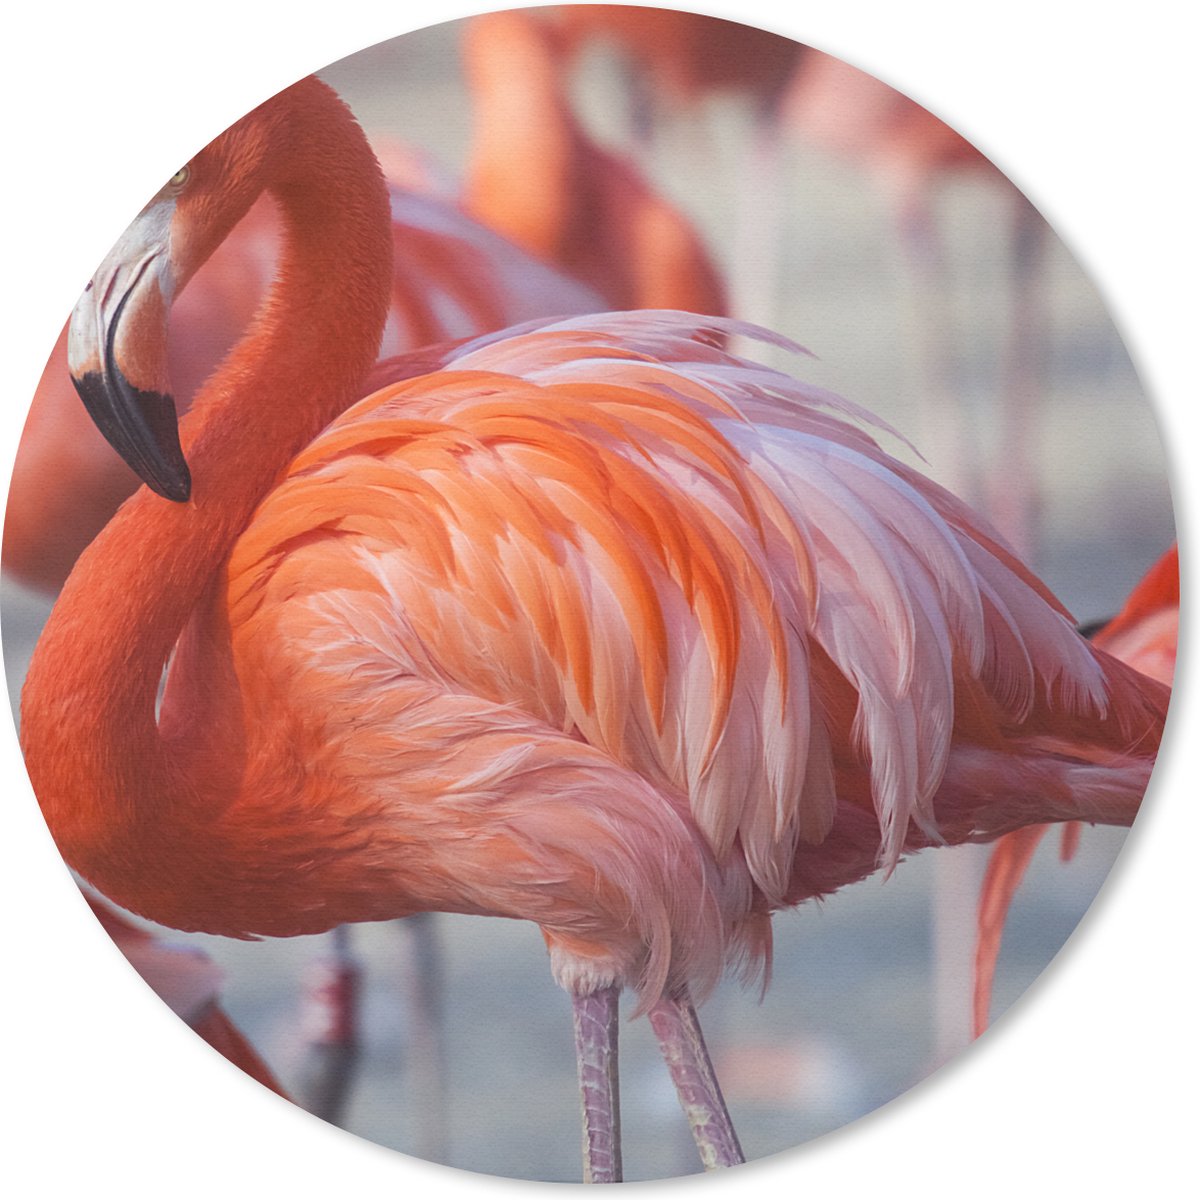 Muismat - Mousepad - Rond - Flamingo - Vogel - Dieren - Roze - 50x50 cm - Ronde muismat